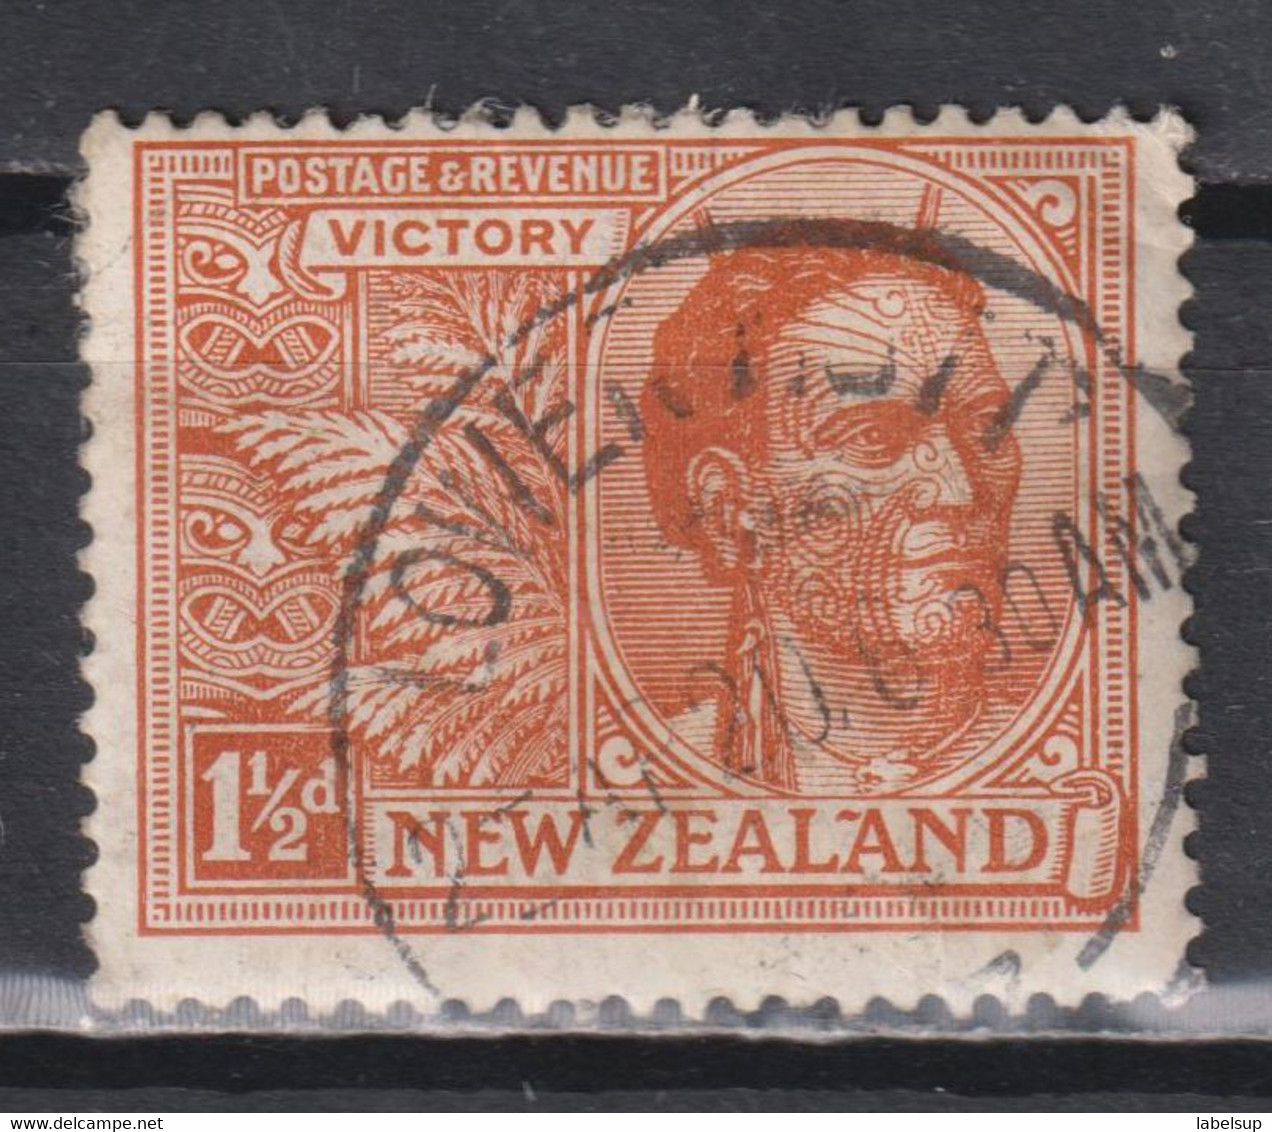 Timbre Oblitéré De Nouvelle Zélande De 1920 N°171 - Oblitérés